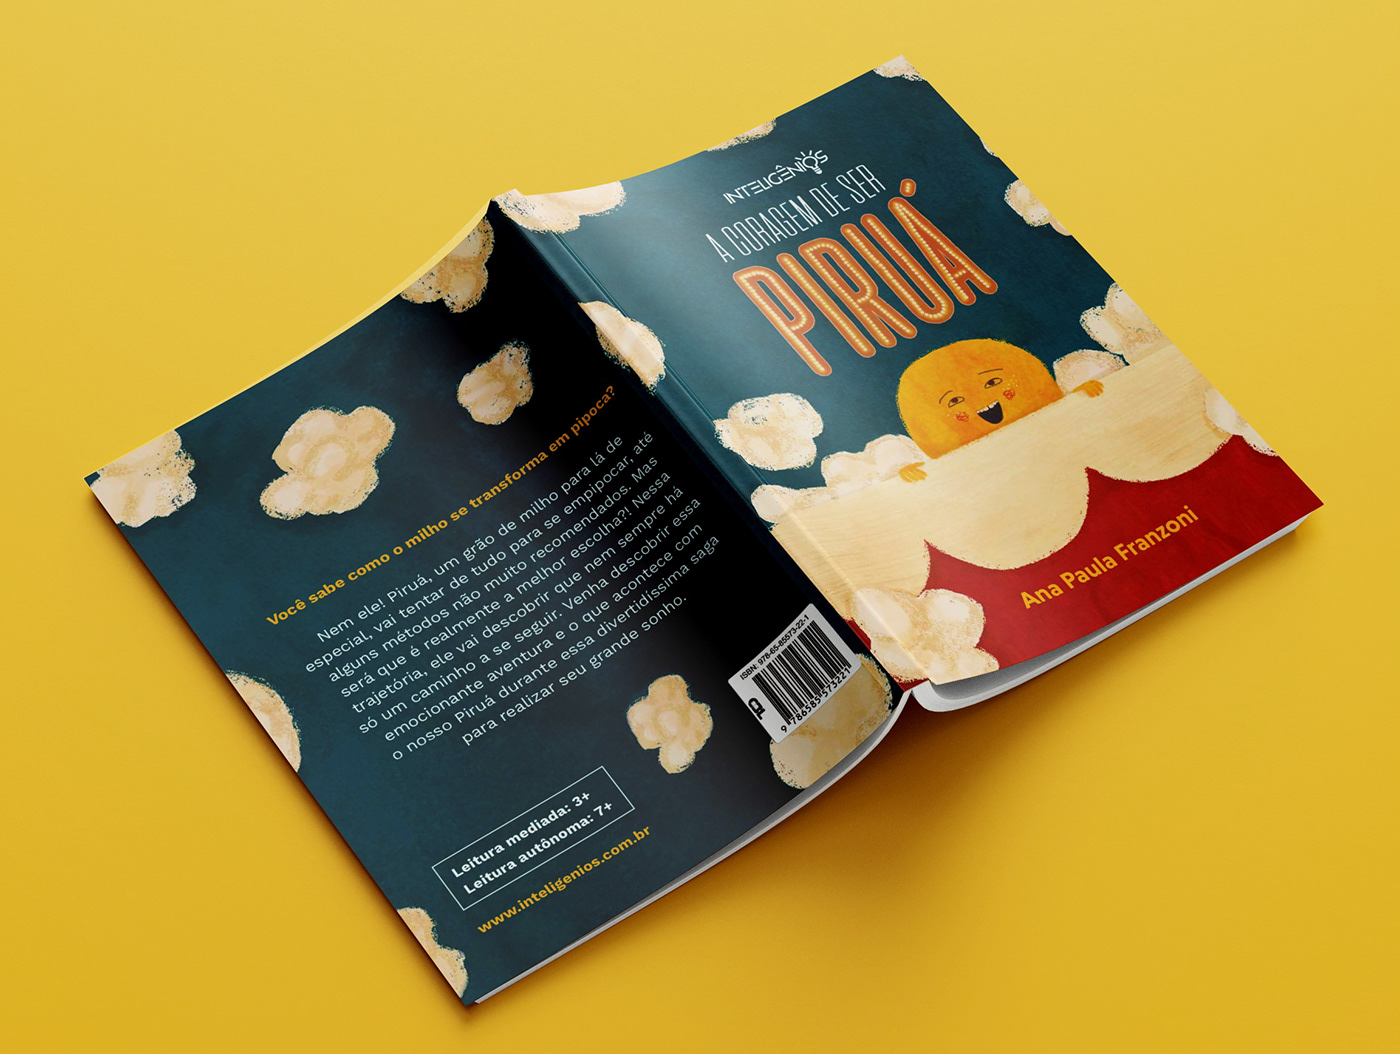 picturebook graphic design  popcorn kidlitillustration ArtDirector Author childrens book literature Kidsbook kidlitartist